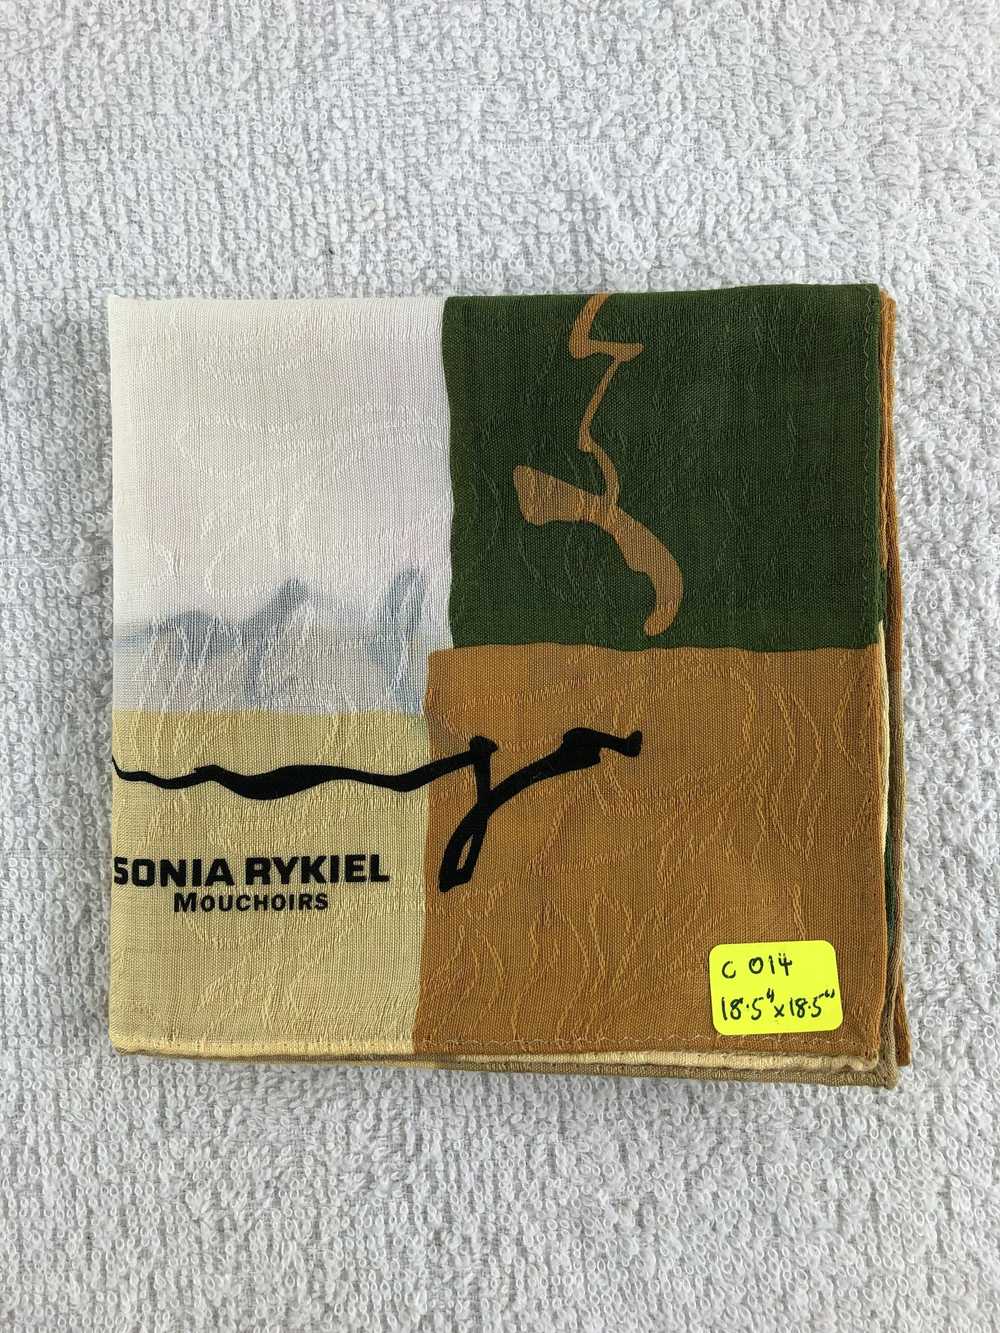 Sonia Rykiel Sonia Rykiel Handkerchief / Bandana … - image 7